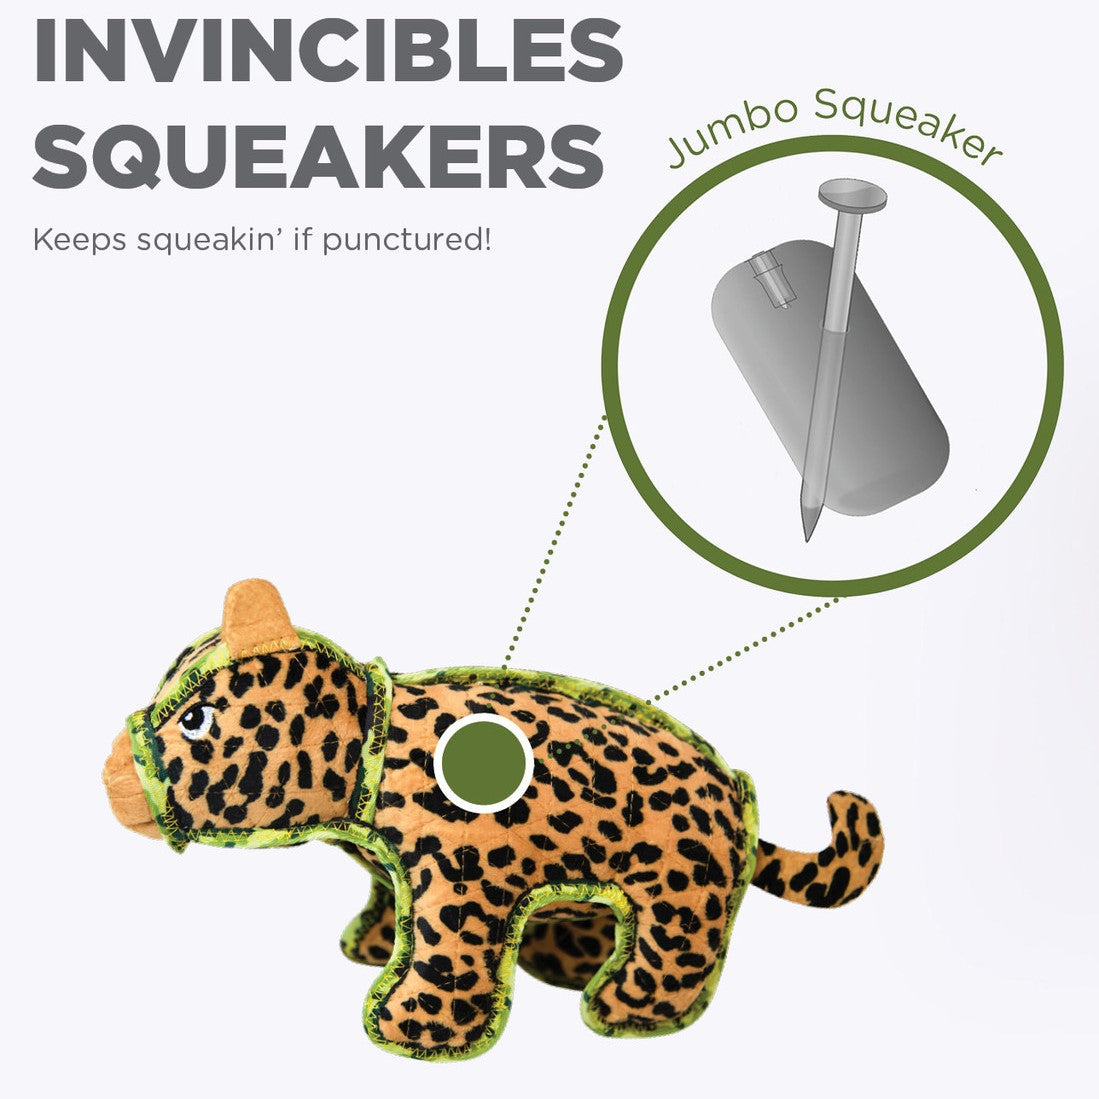 Outward Hound Xtreme Seamz  Leopard Medium  |  Squeaky Plush Toy